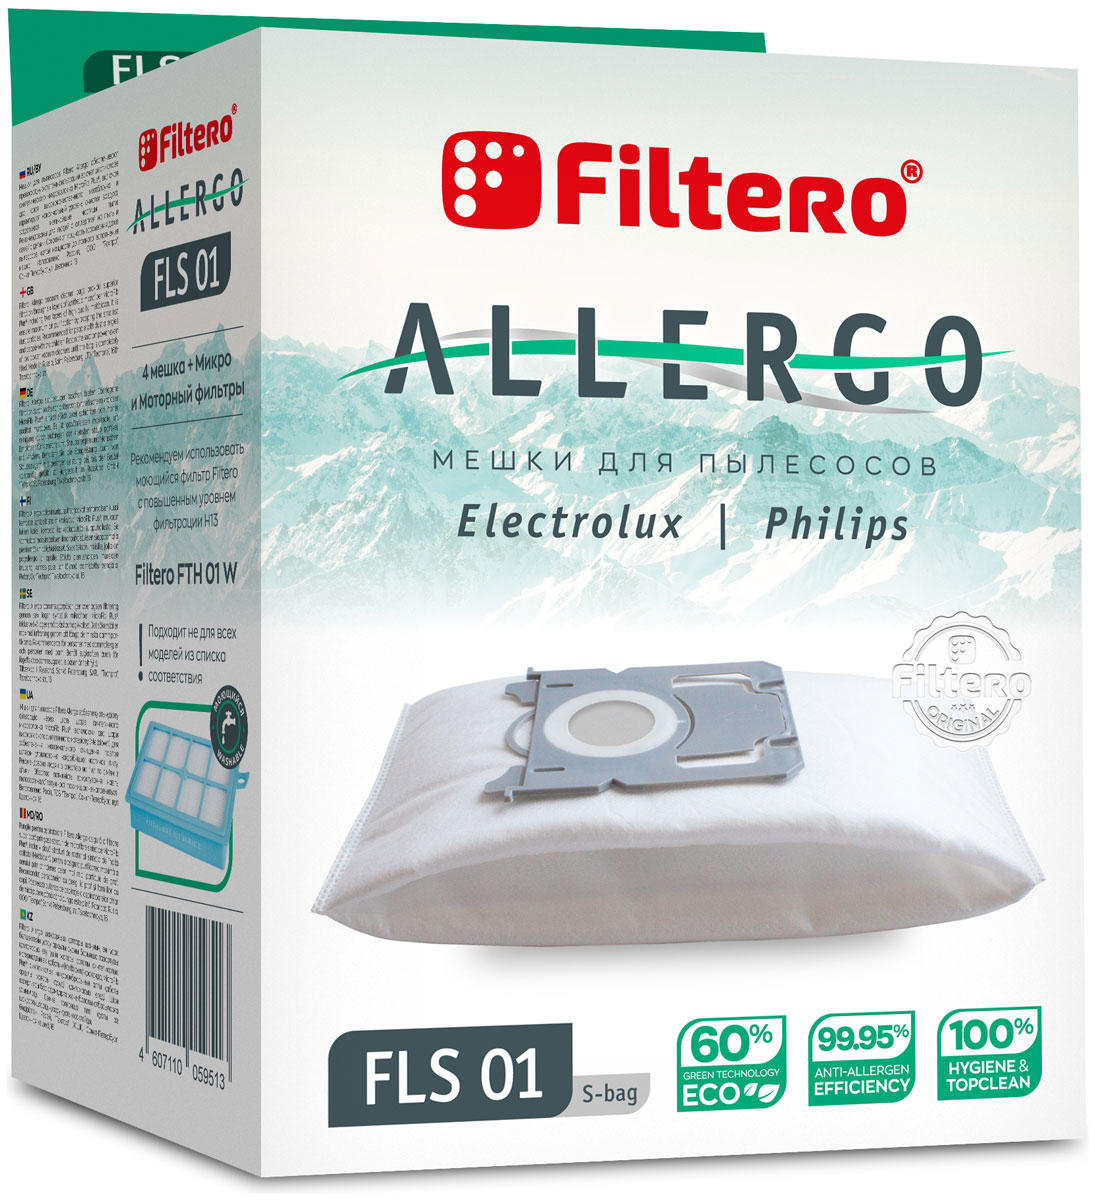 Пылесборники Filtero FLS 01 S-bag Allergo 4 шт. + моторный фильтр и микрофильтр мешки пылесборники filtero mie 02 allergo 4шт